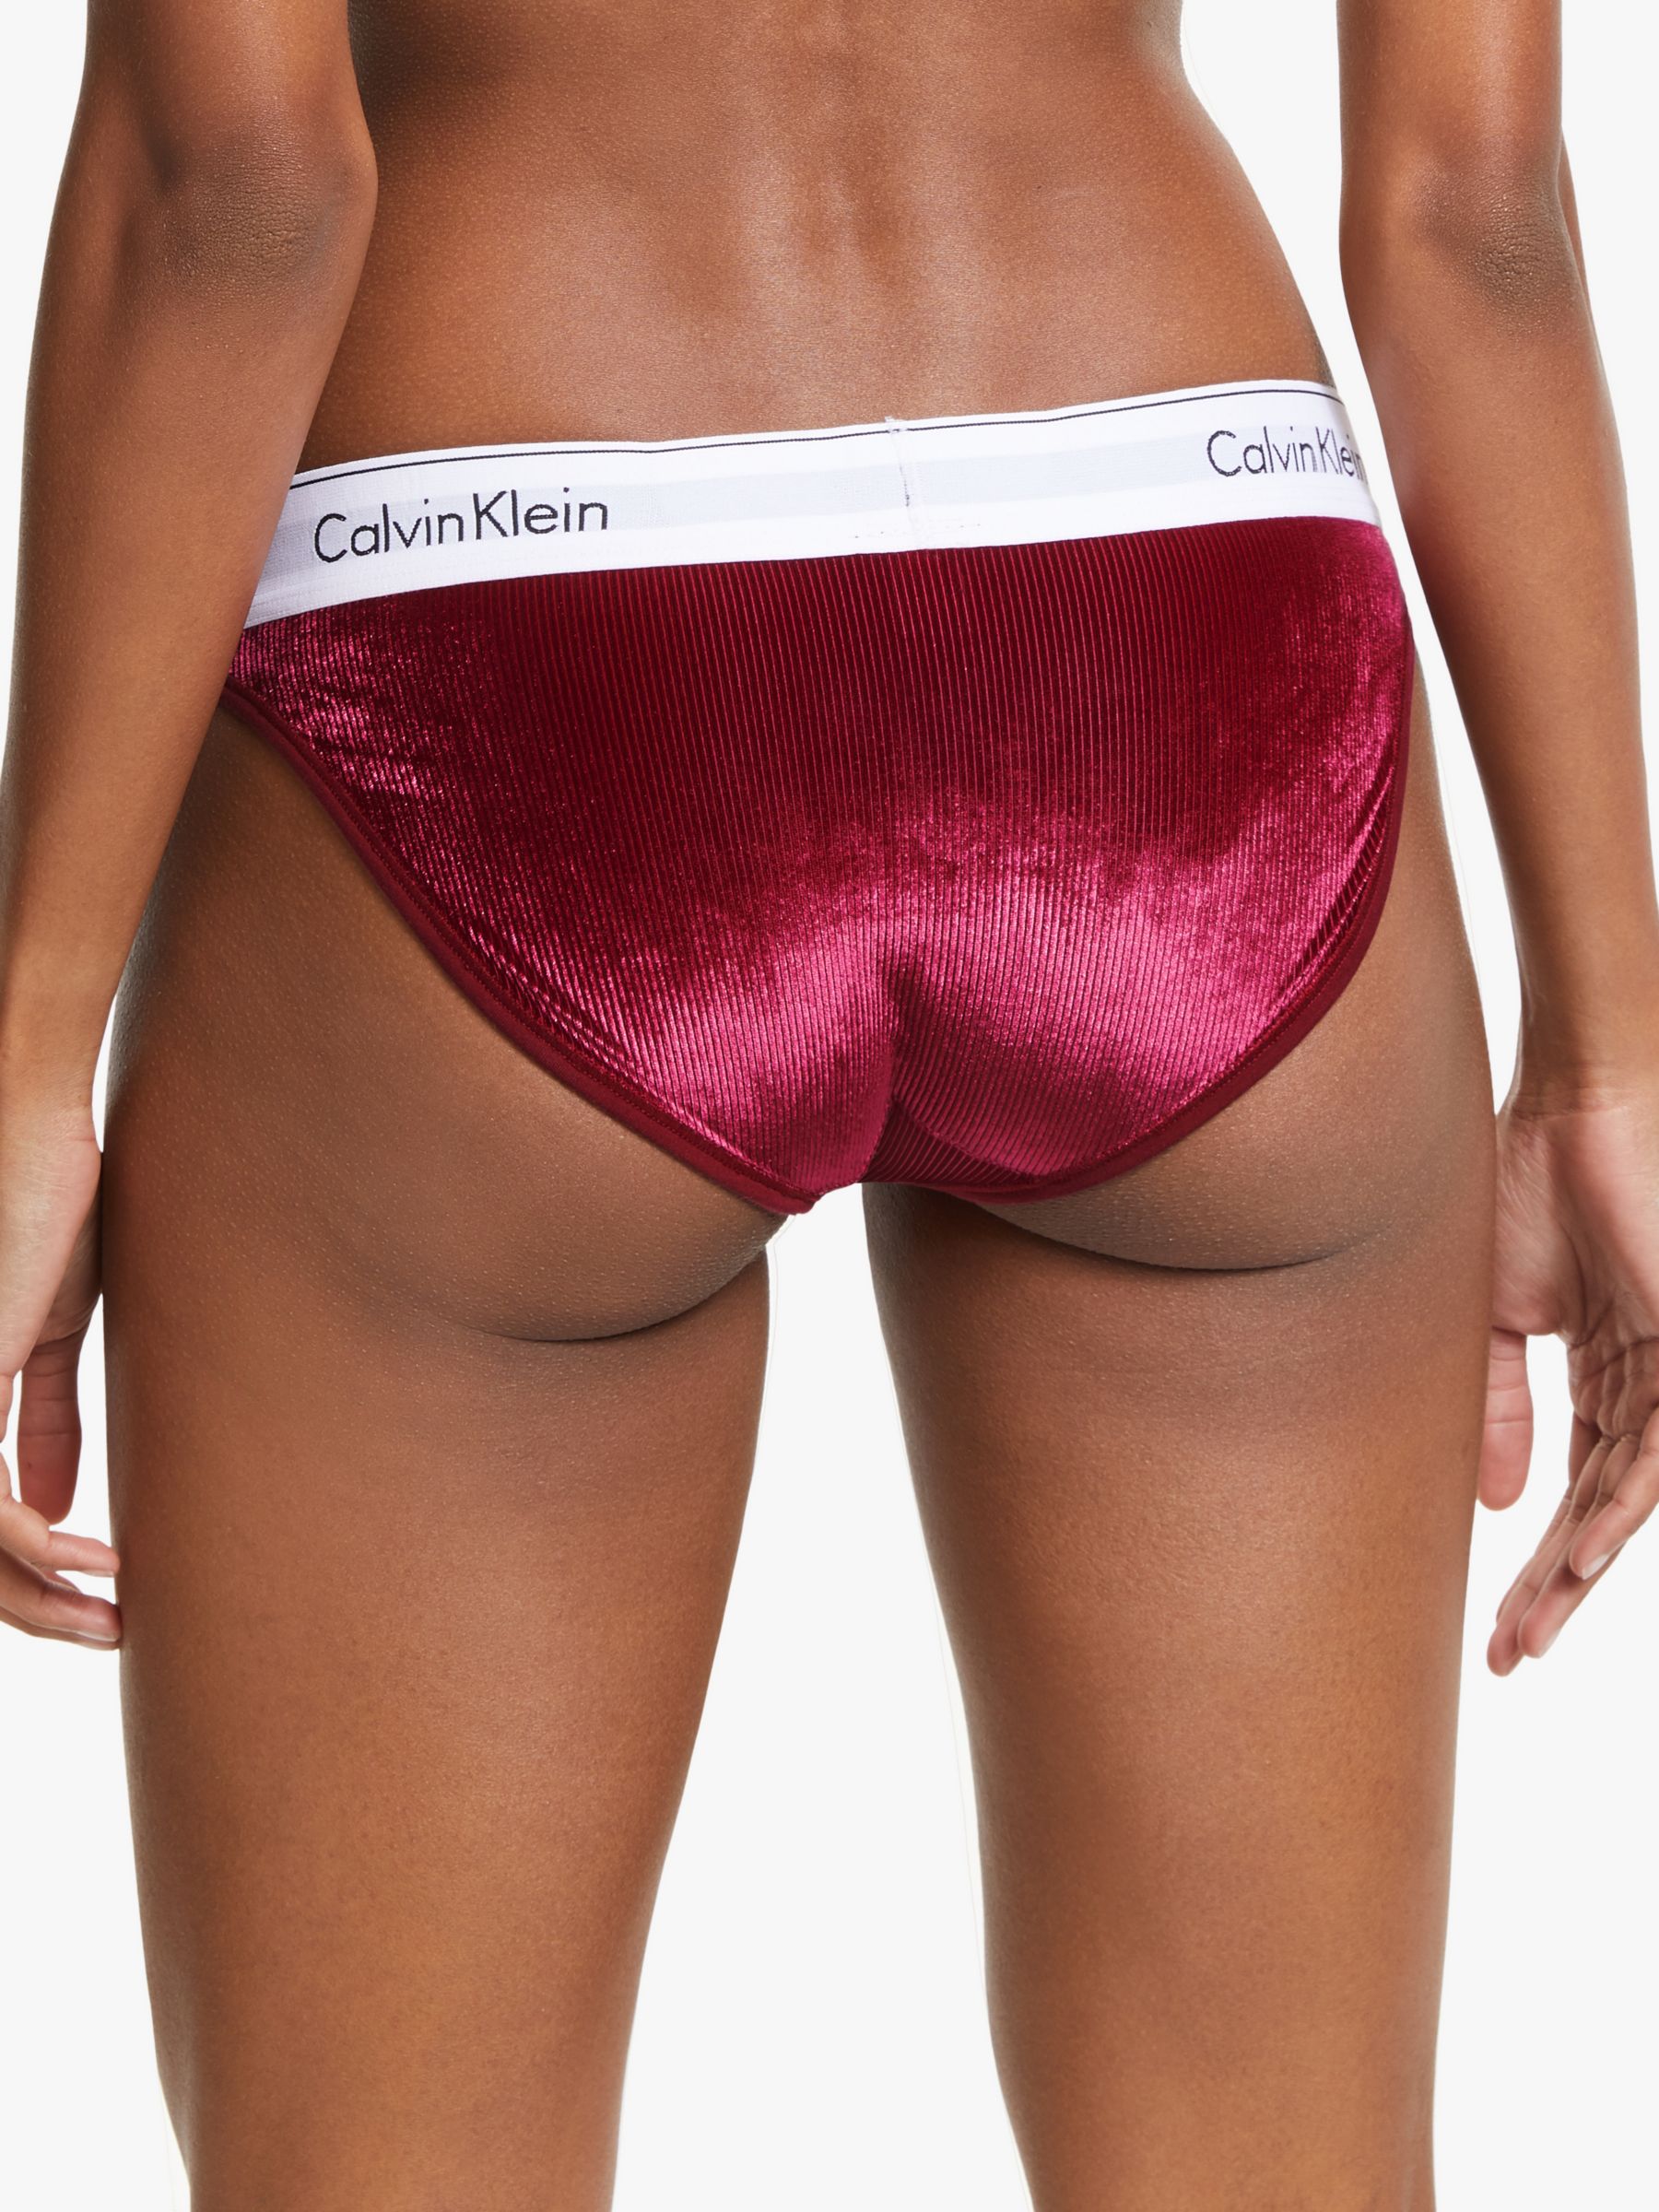 red velvet calvin klein underwear set